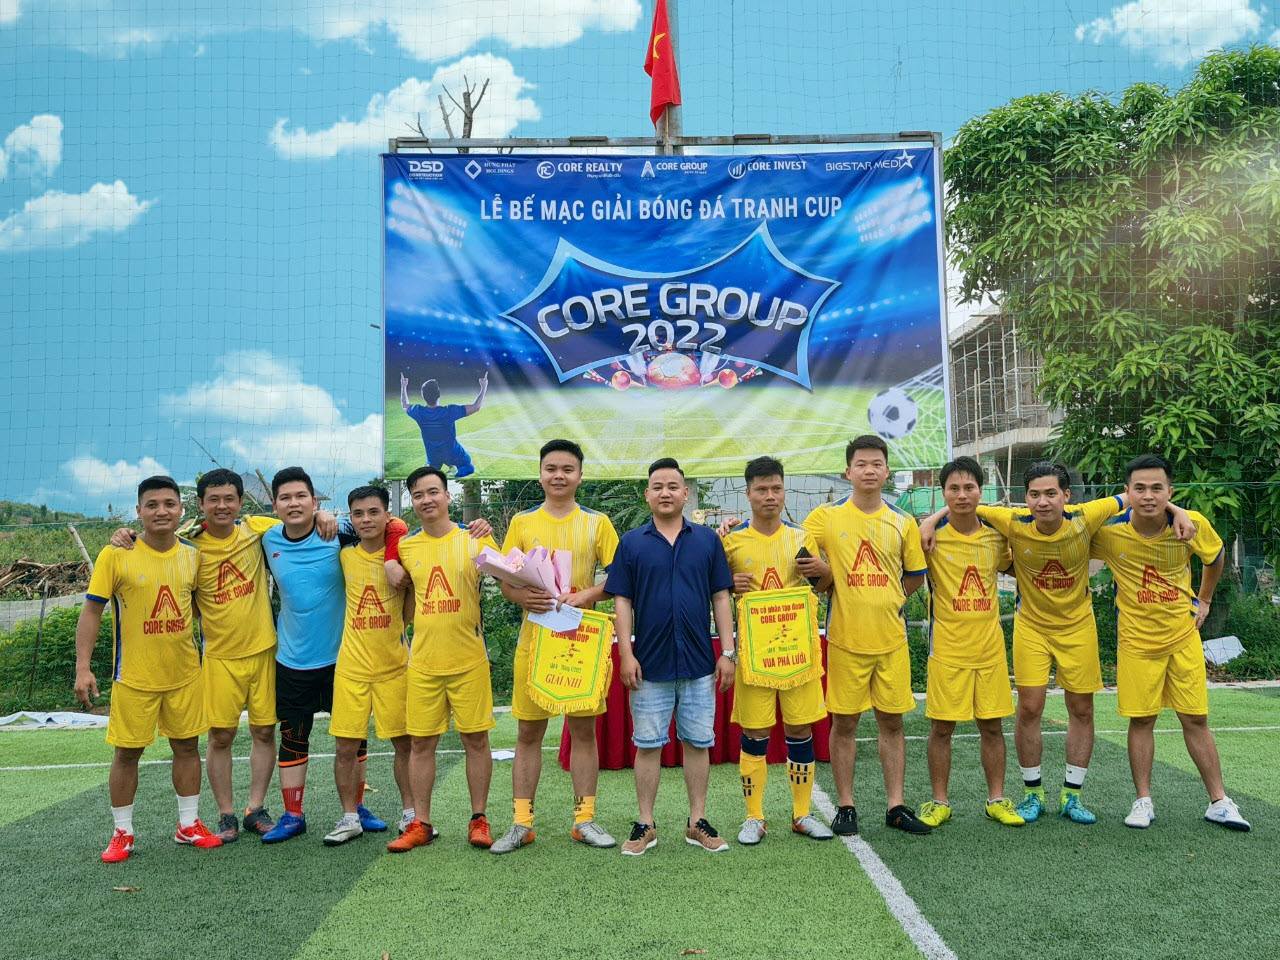 Lễ Bế mạc Giải bóng đá nam tranh cúp Core Group 2022 lần thứ V